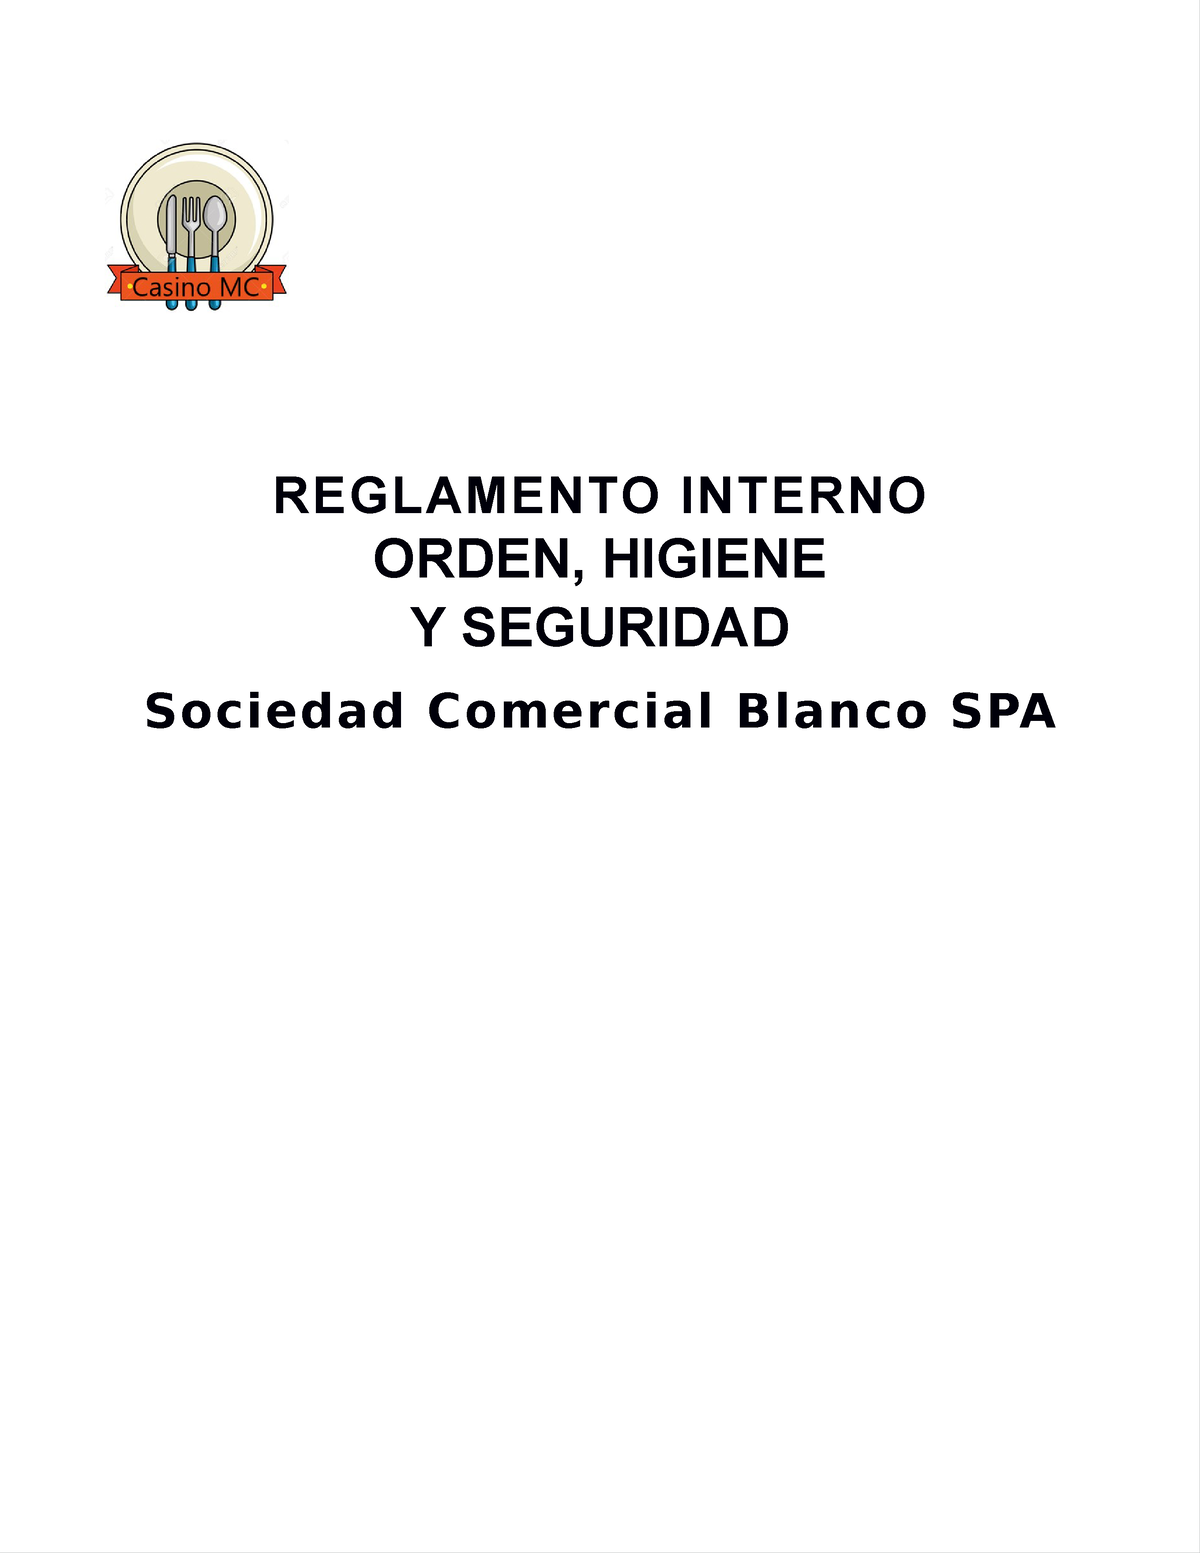 Reglamento De Orden Higiene Y Seguridad Reglamento Interno Orden Higiene Y Seguridad Sociedad 1805